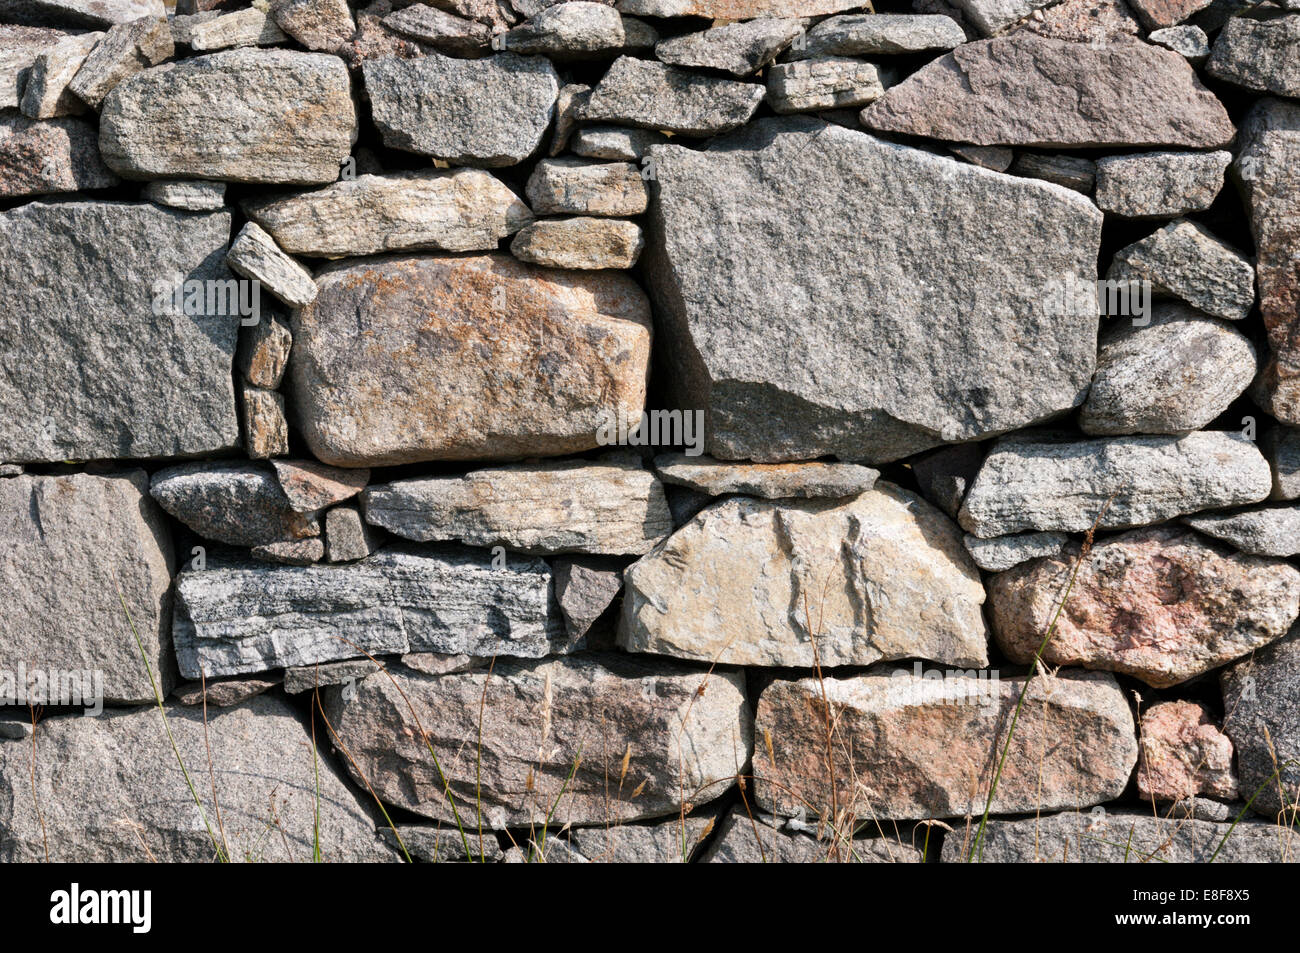 Un mur en pierre sèche dans les Hébrides extérieures contenant de gros blocs de gneiss Lewisian. Banque D'Images